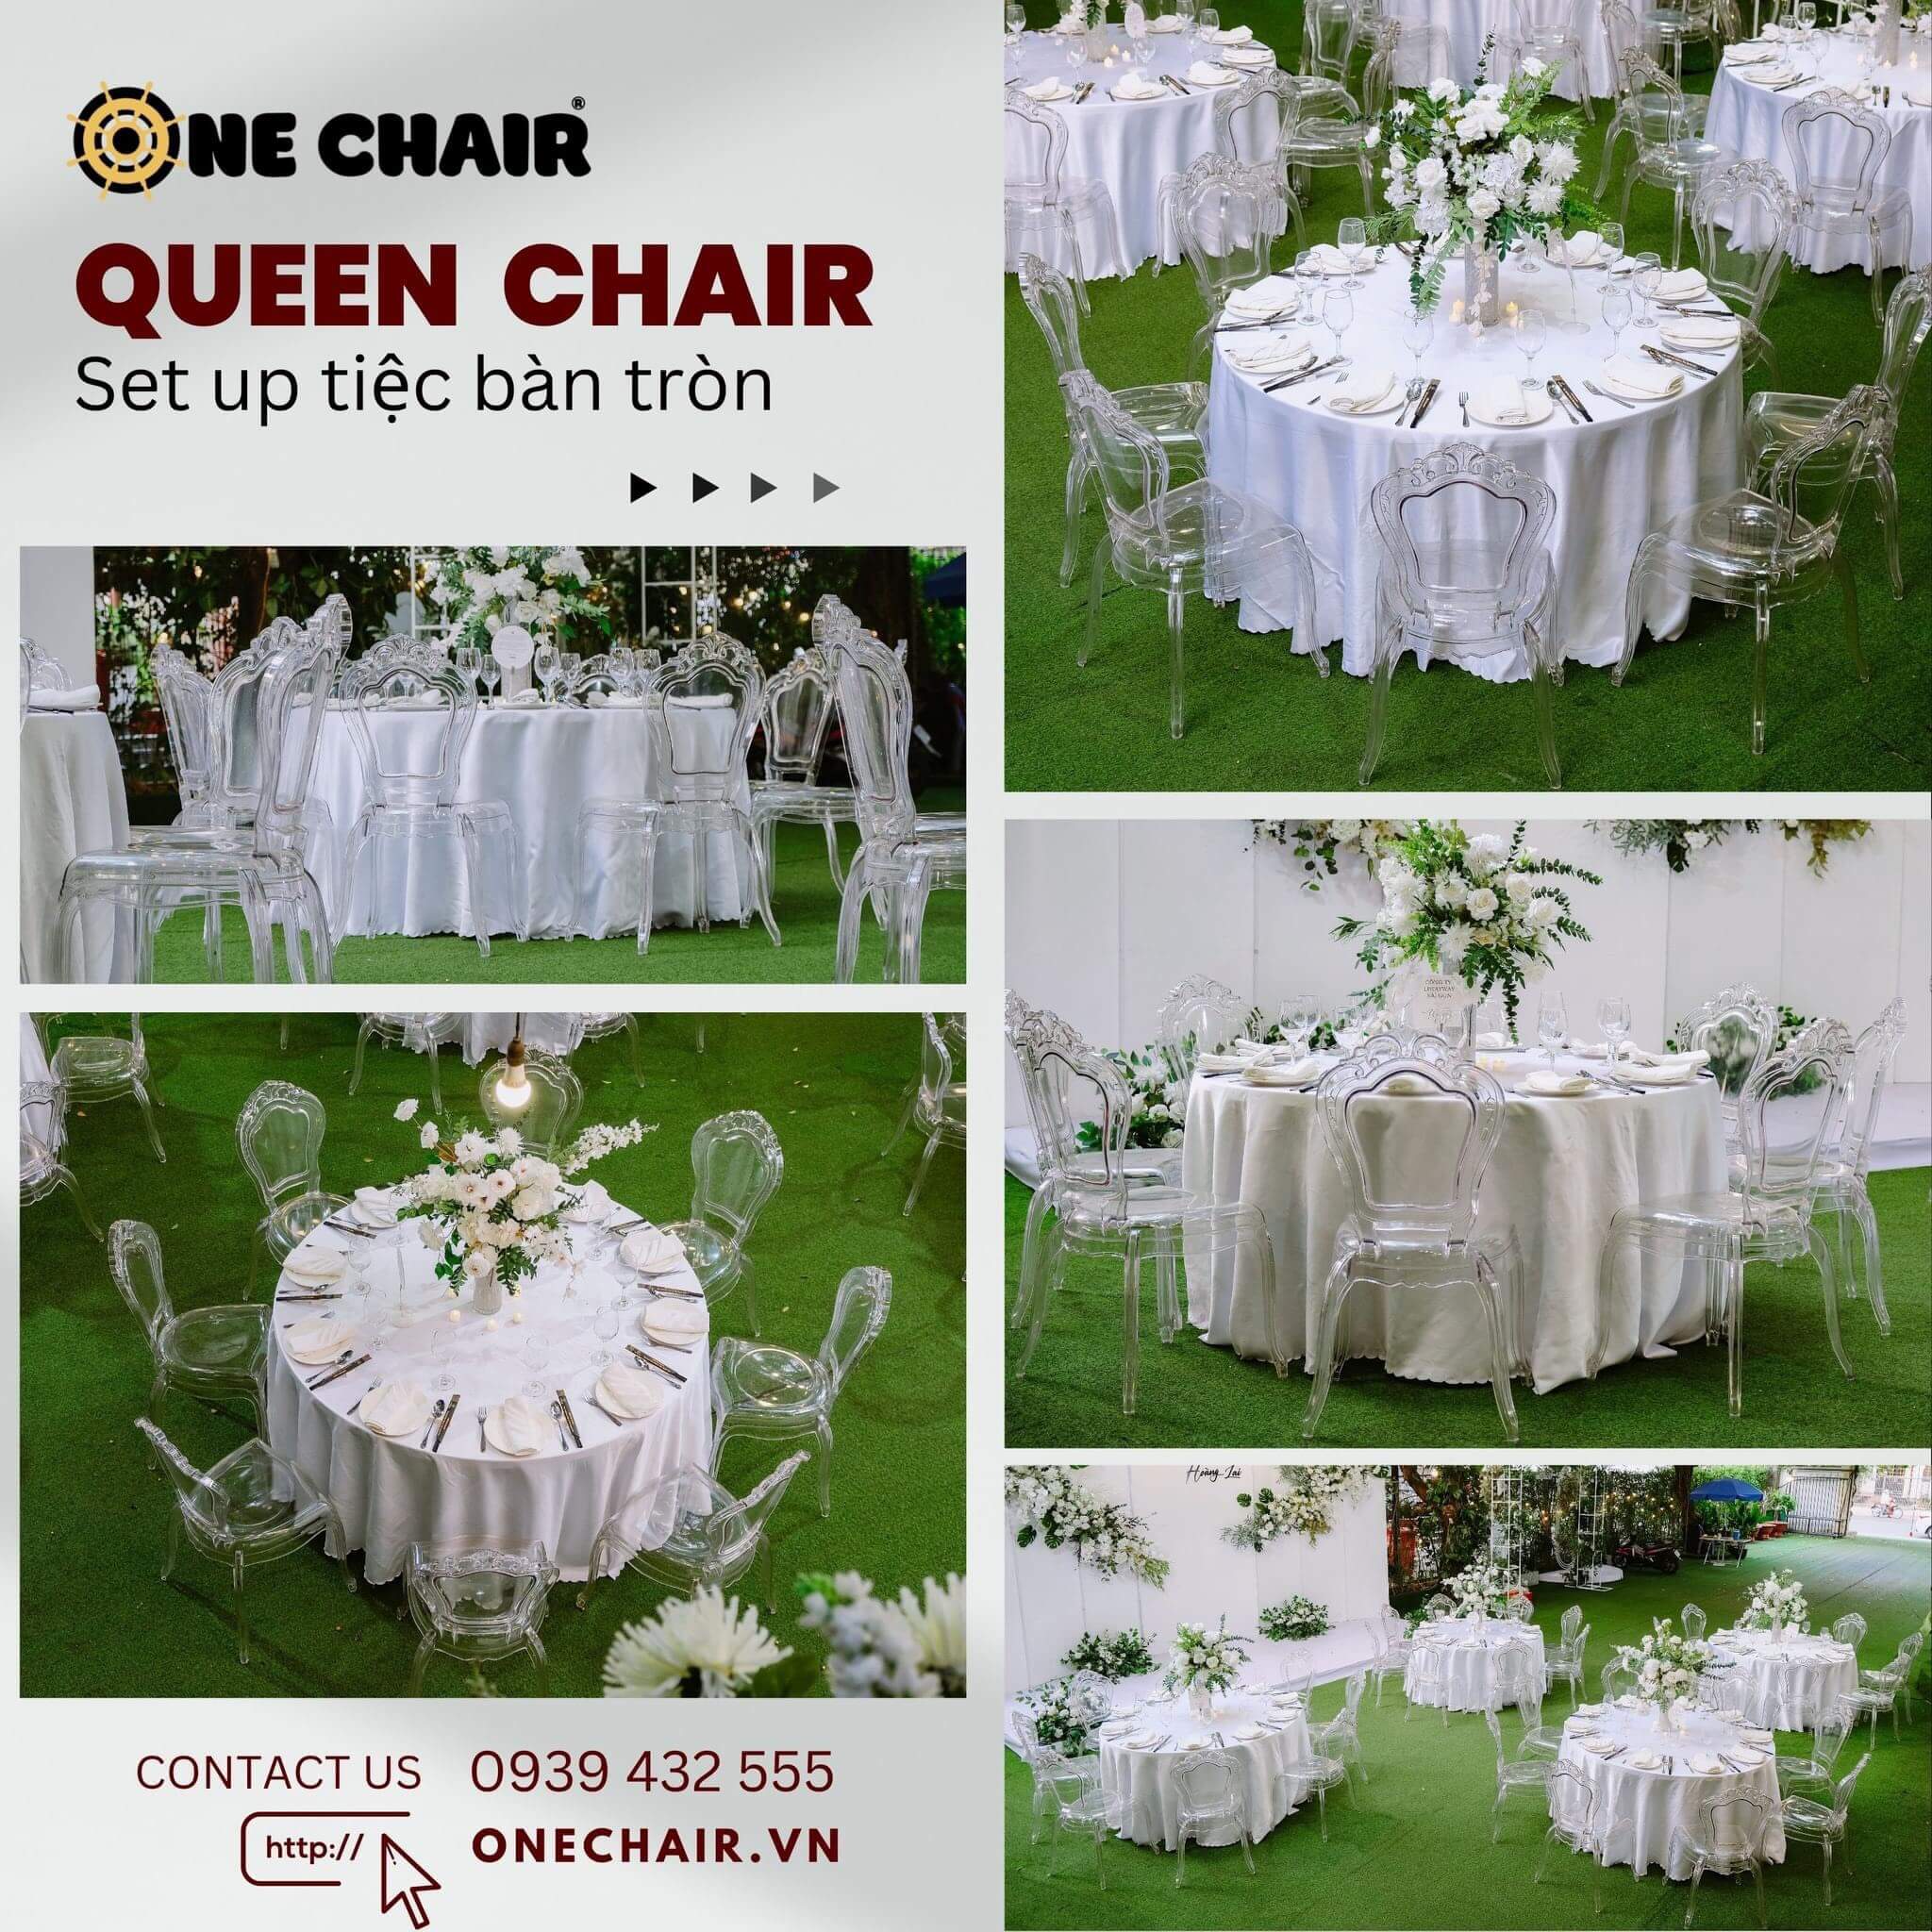 Hình 2: Cho thuê bàn ghế sự kiện tiệc đám cưới cao cấp tại Quận 2 HCM.